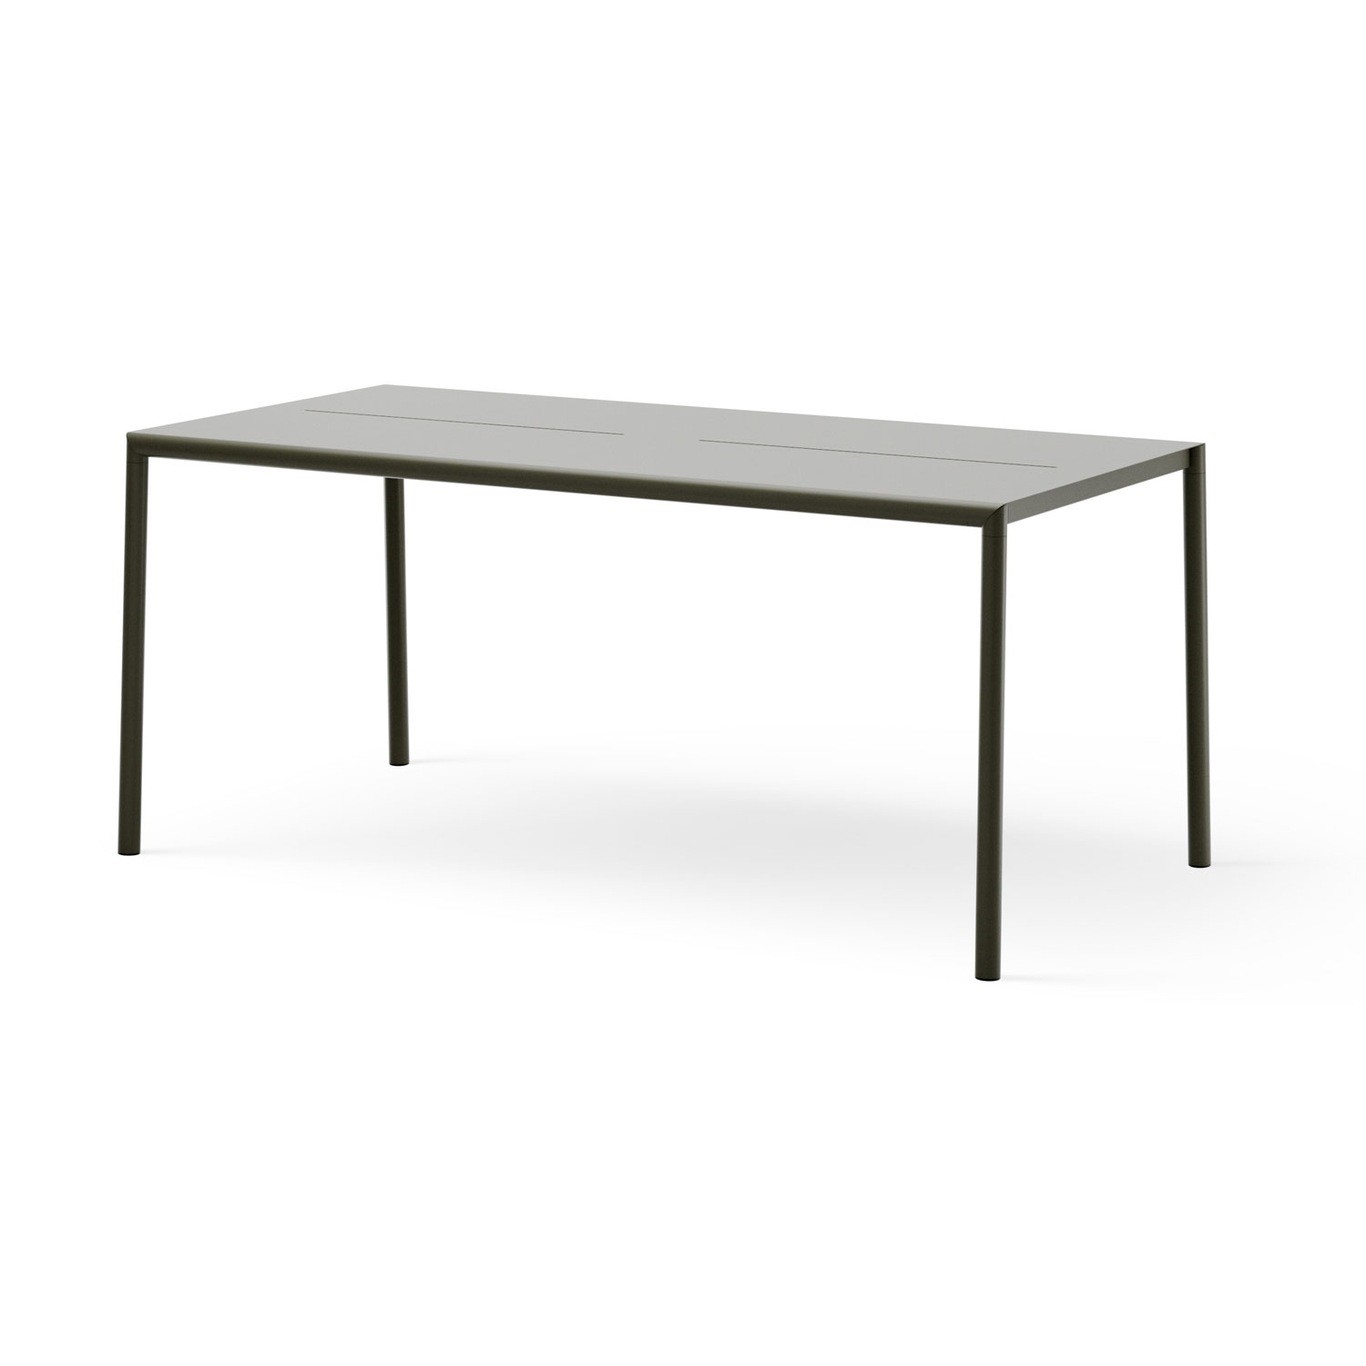 May Tisch 85x170 cm, Dunkelgrün